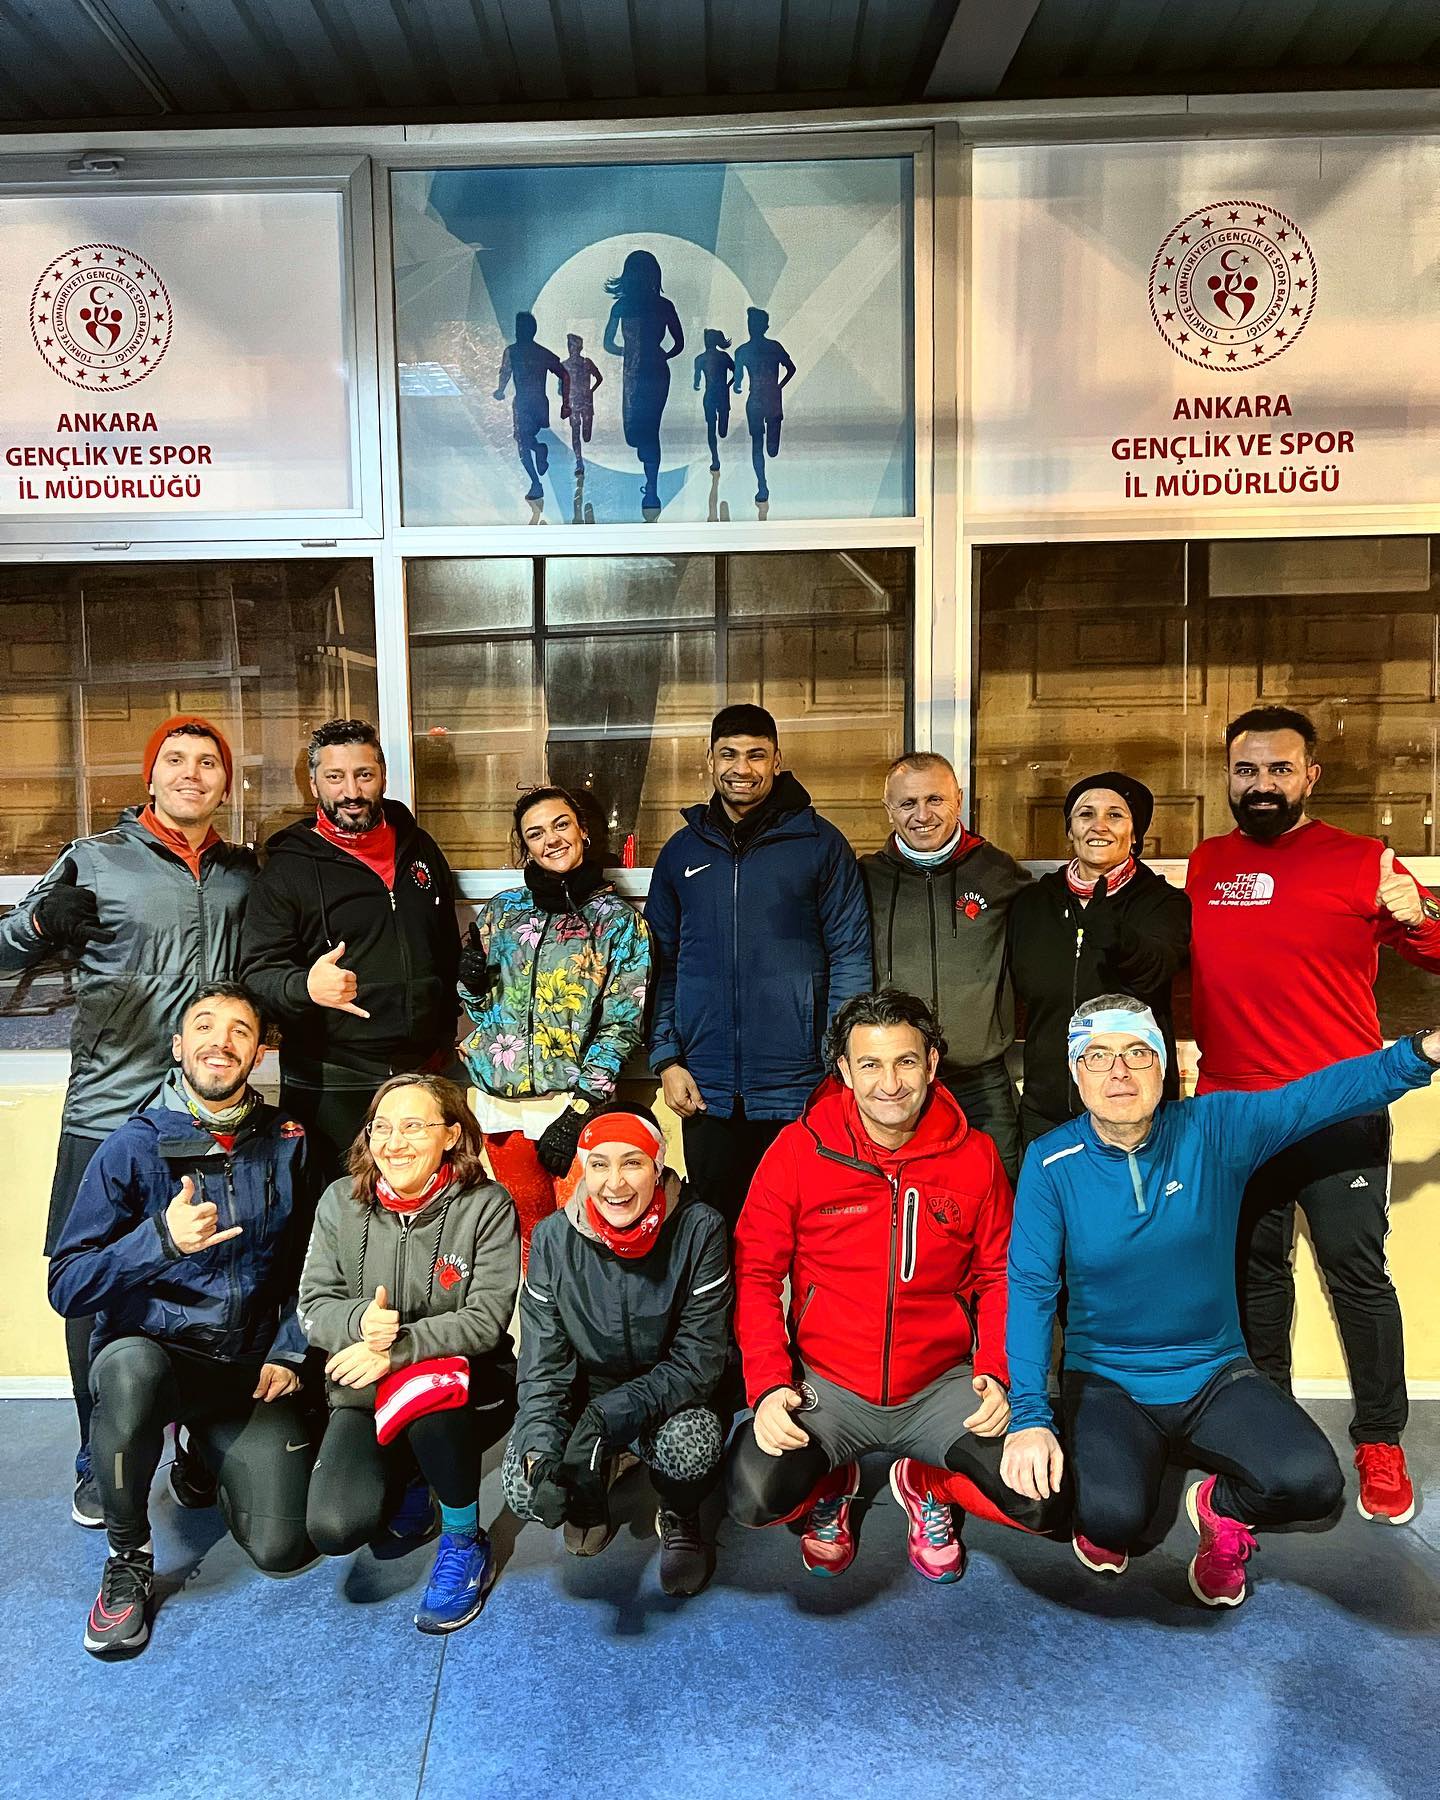 Perşembe antrenmanında, 200 metreyi 20 saniye koşan ilk Türk sporcu şampıyon İzzet Safer’i misafir ettik